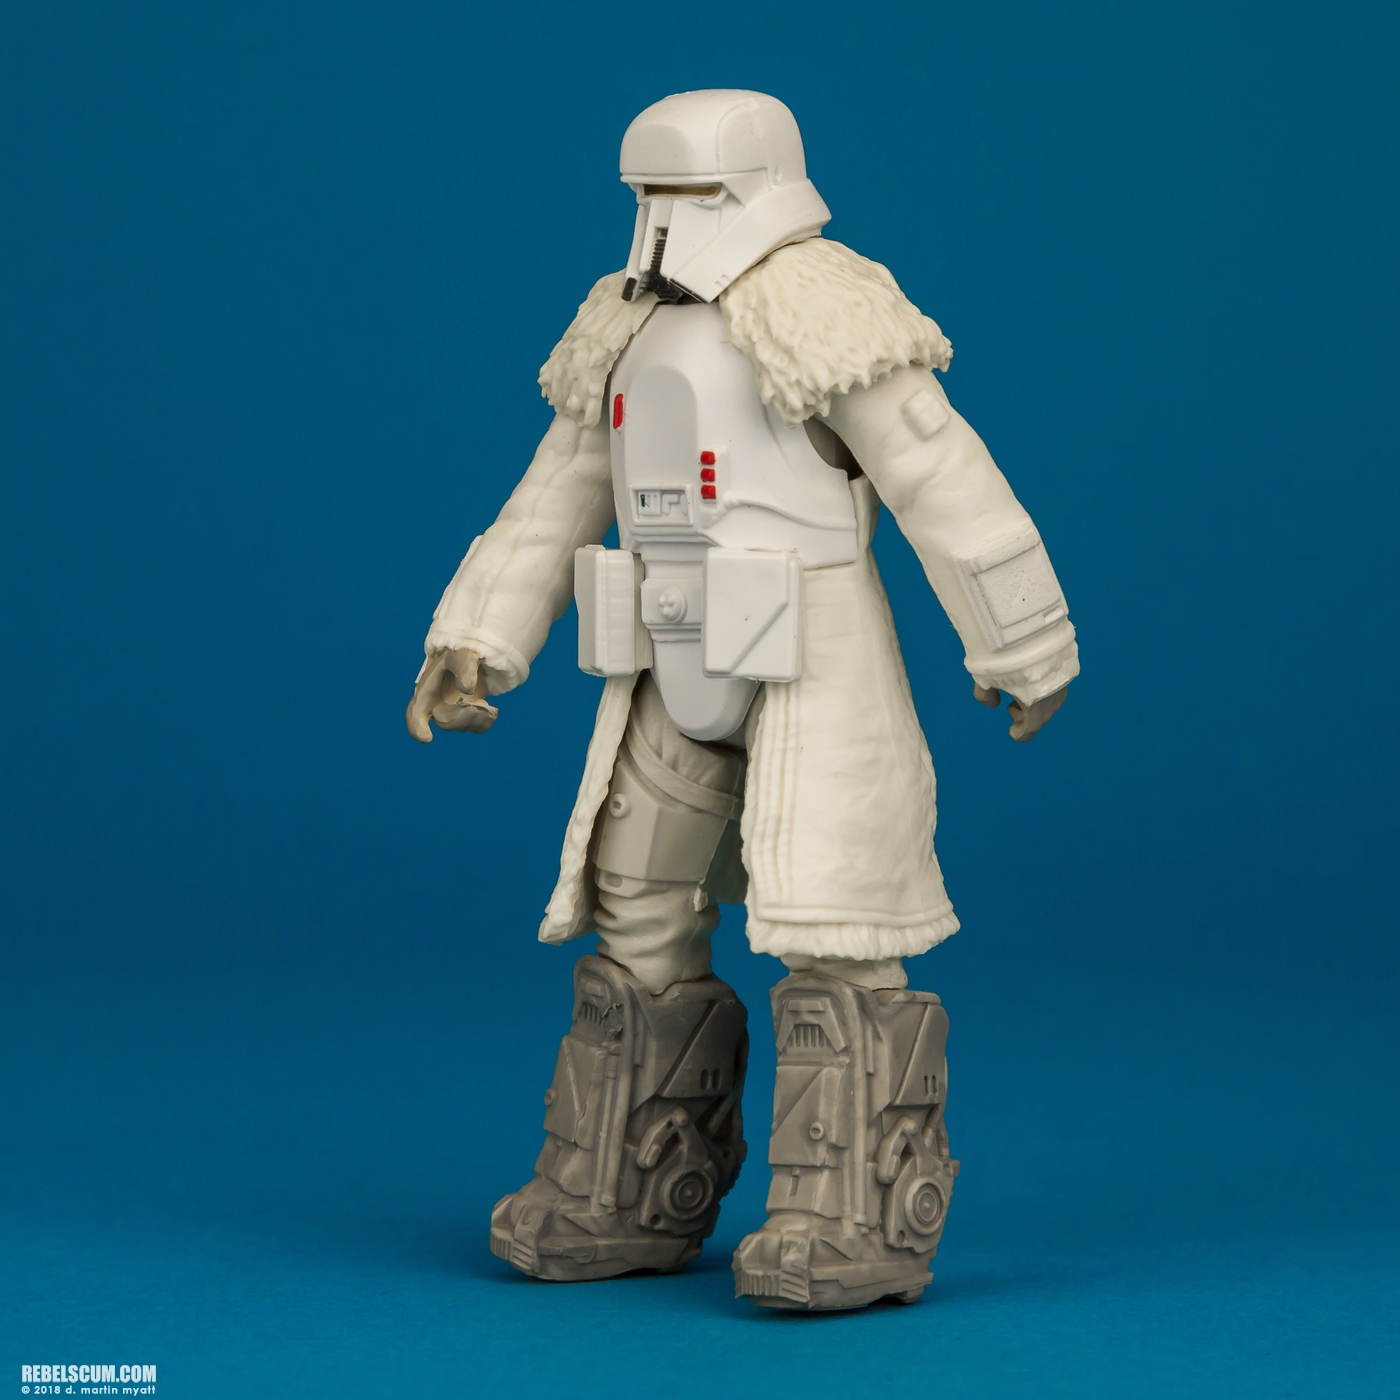 Range-Trooper-Solo-Star-Wars-Universe-ForceLink-2-Hasbro-003.jpg